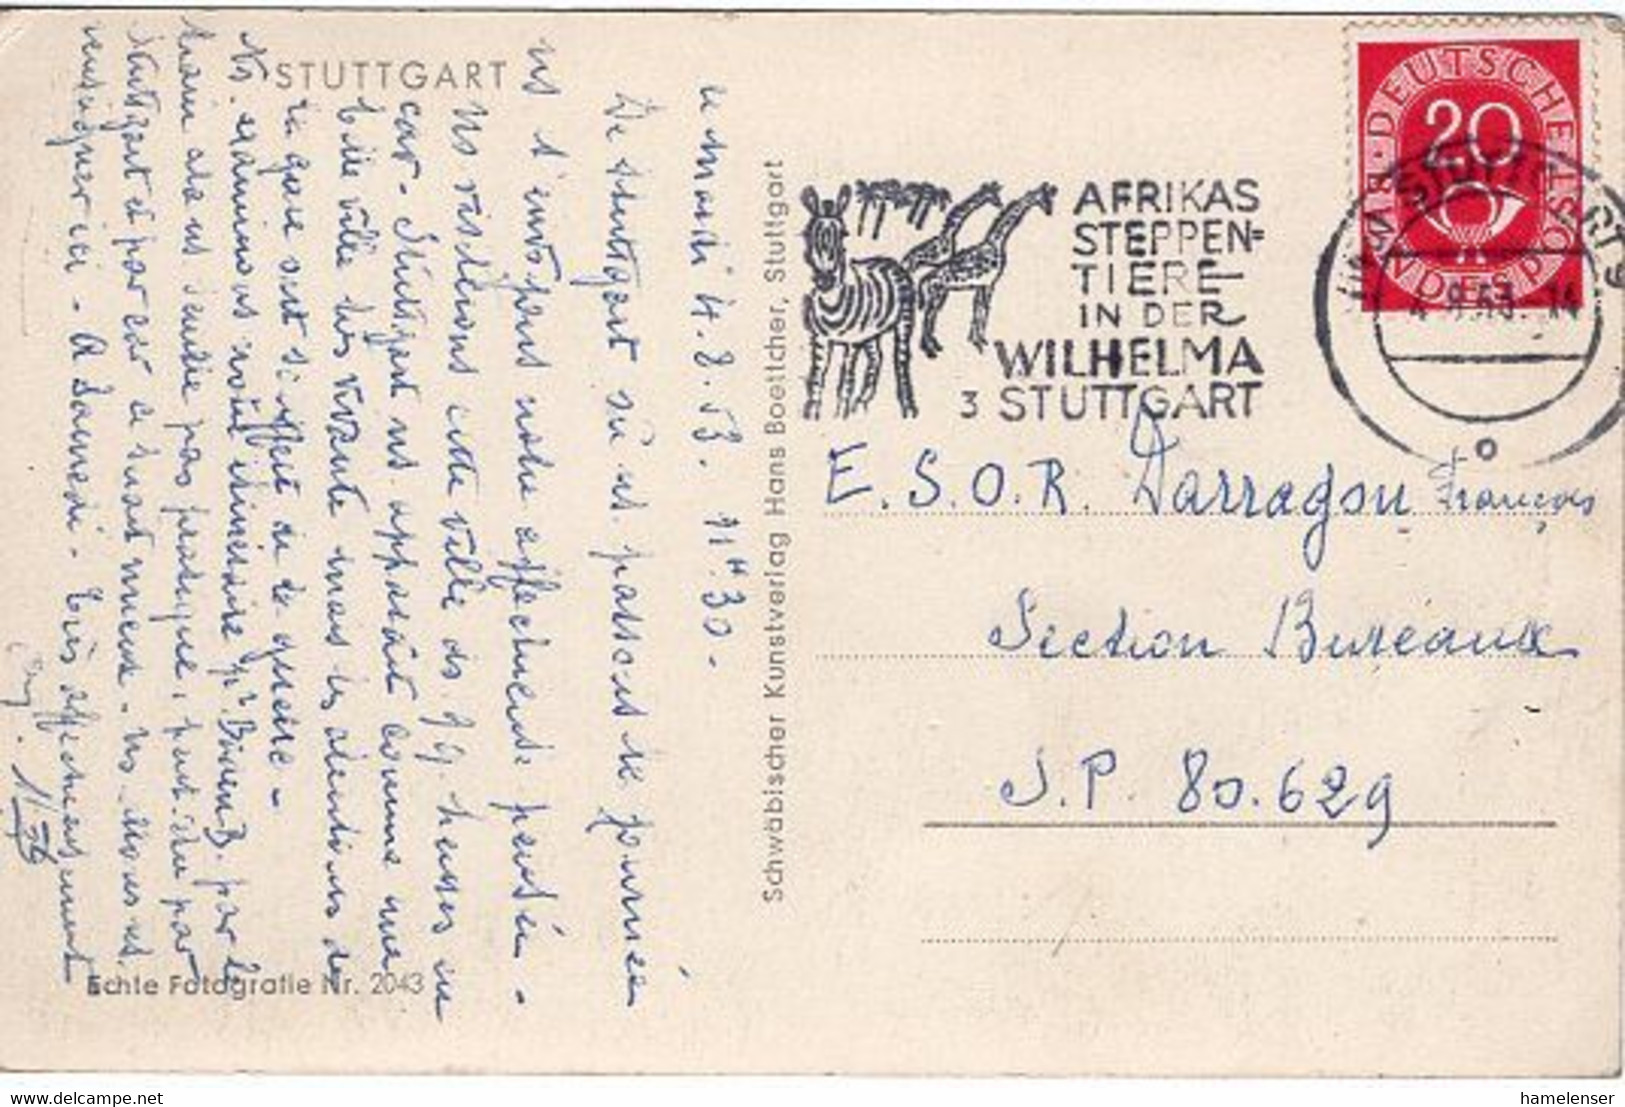 51708 - Bund - 1953 - 20Pfg Posthorn EF A AnsKte STUTTGART - AFRIKAS STEPPENTIERE -> S.P. 80.629 (Frankreich) - Girafes